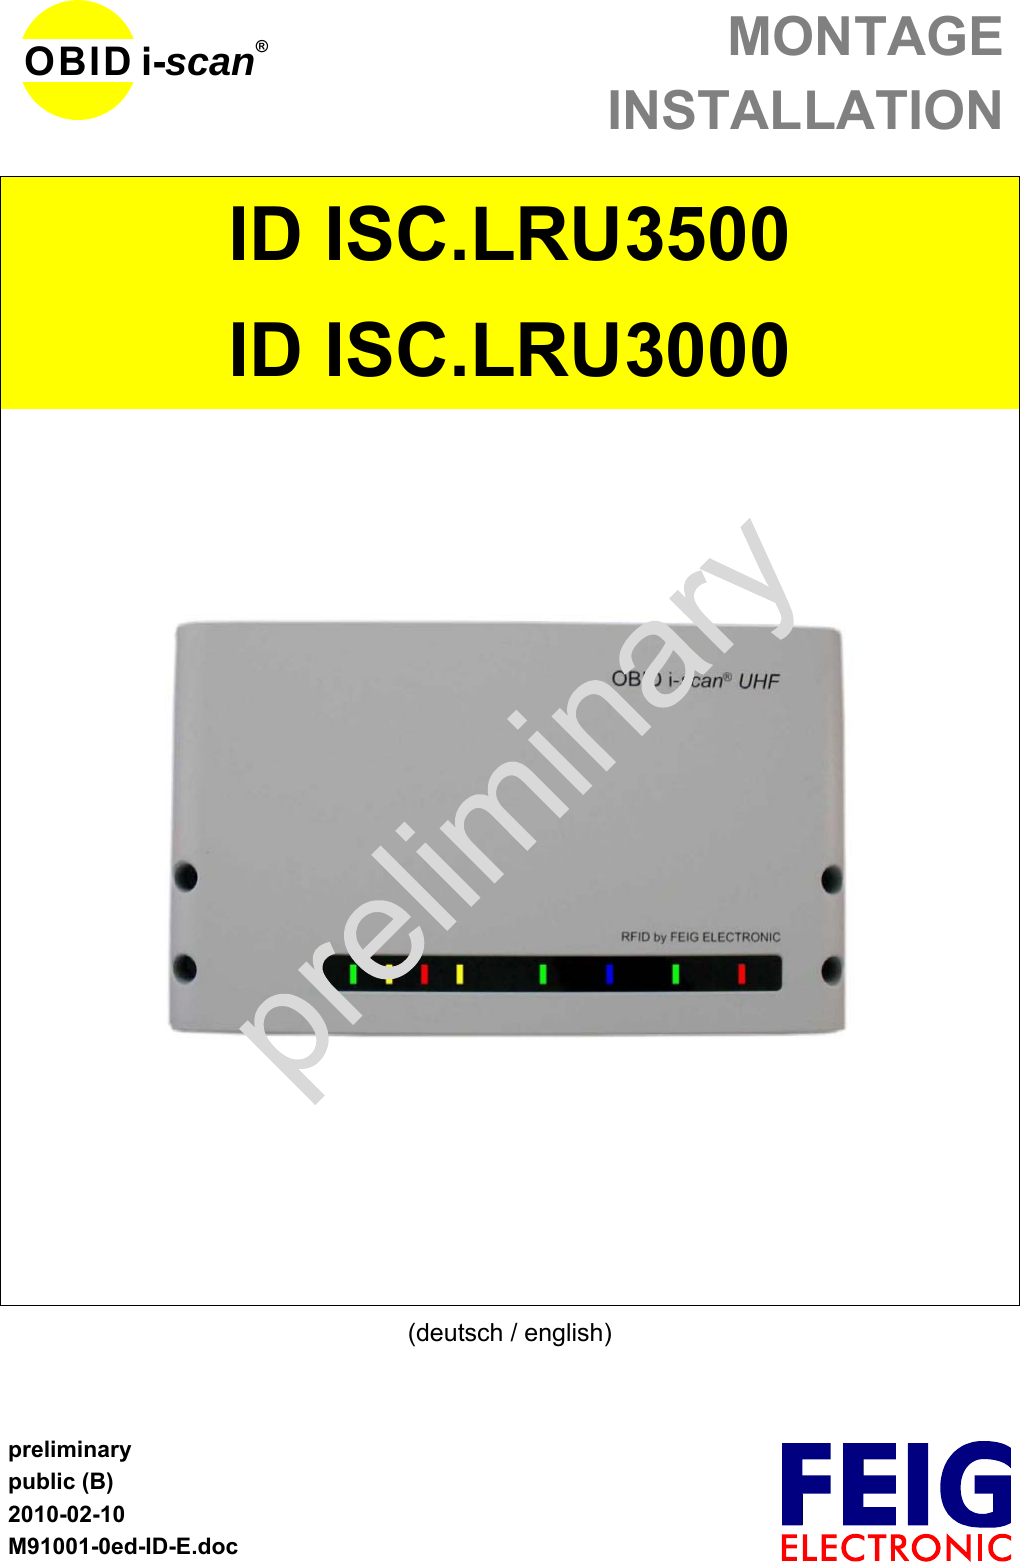 MONTAGEINSTALLATIONpreliminarypublic (B)2010-02-10M91001-0ed-ID-E.docOBID i-scan®ID ISC.LRU3500ID ISC.LRU3000(deutsch / english)